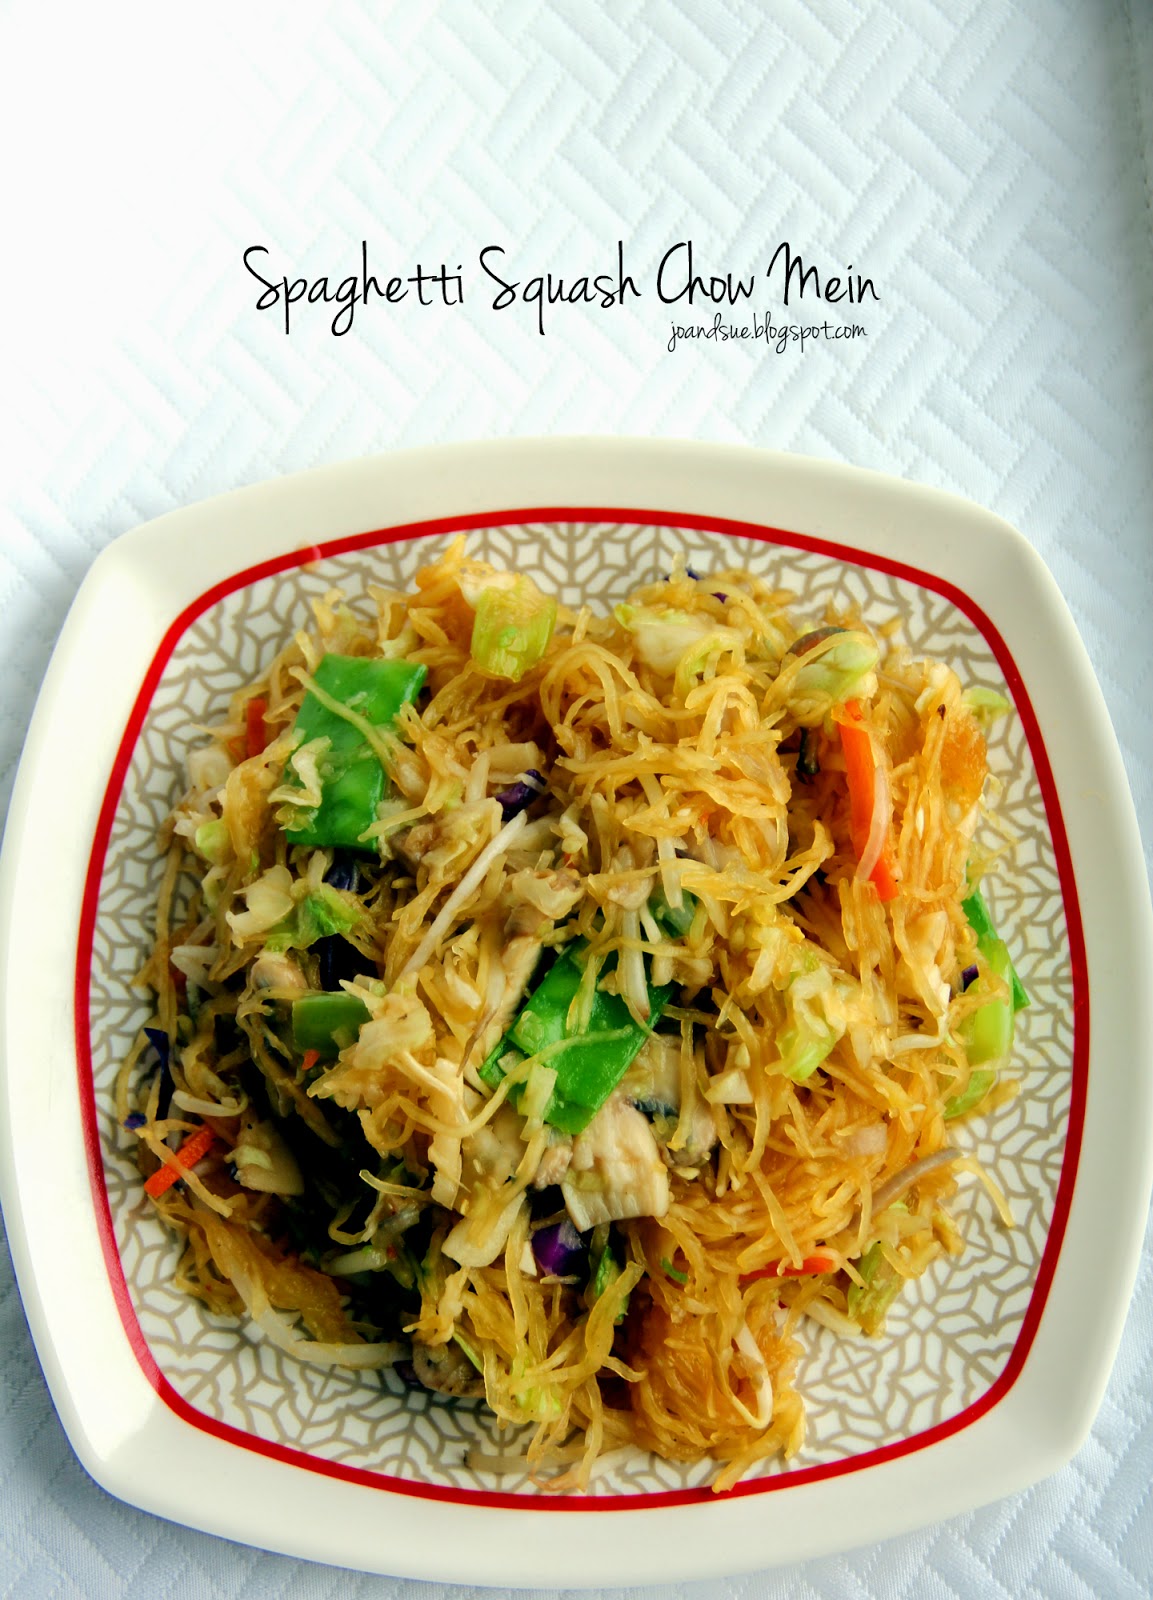 Jo and Sue: Spaghetti Squash Chow Mein